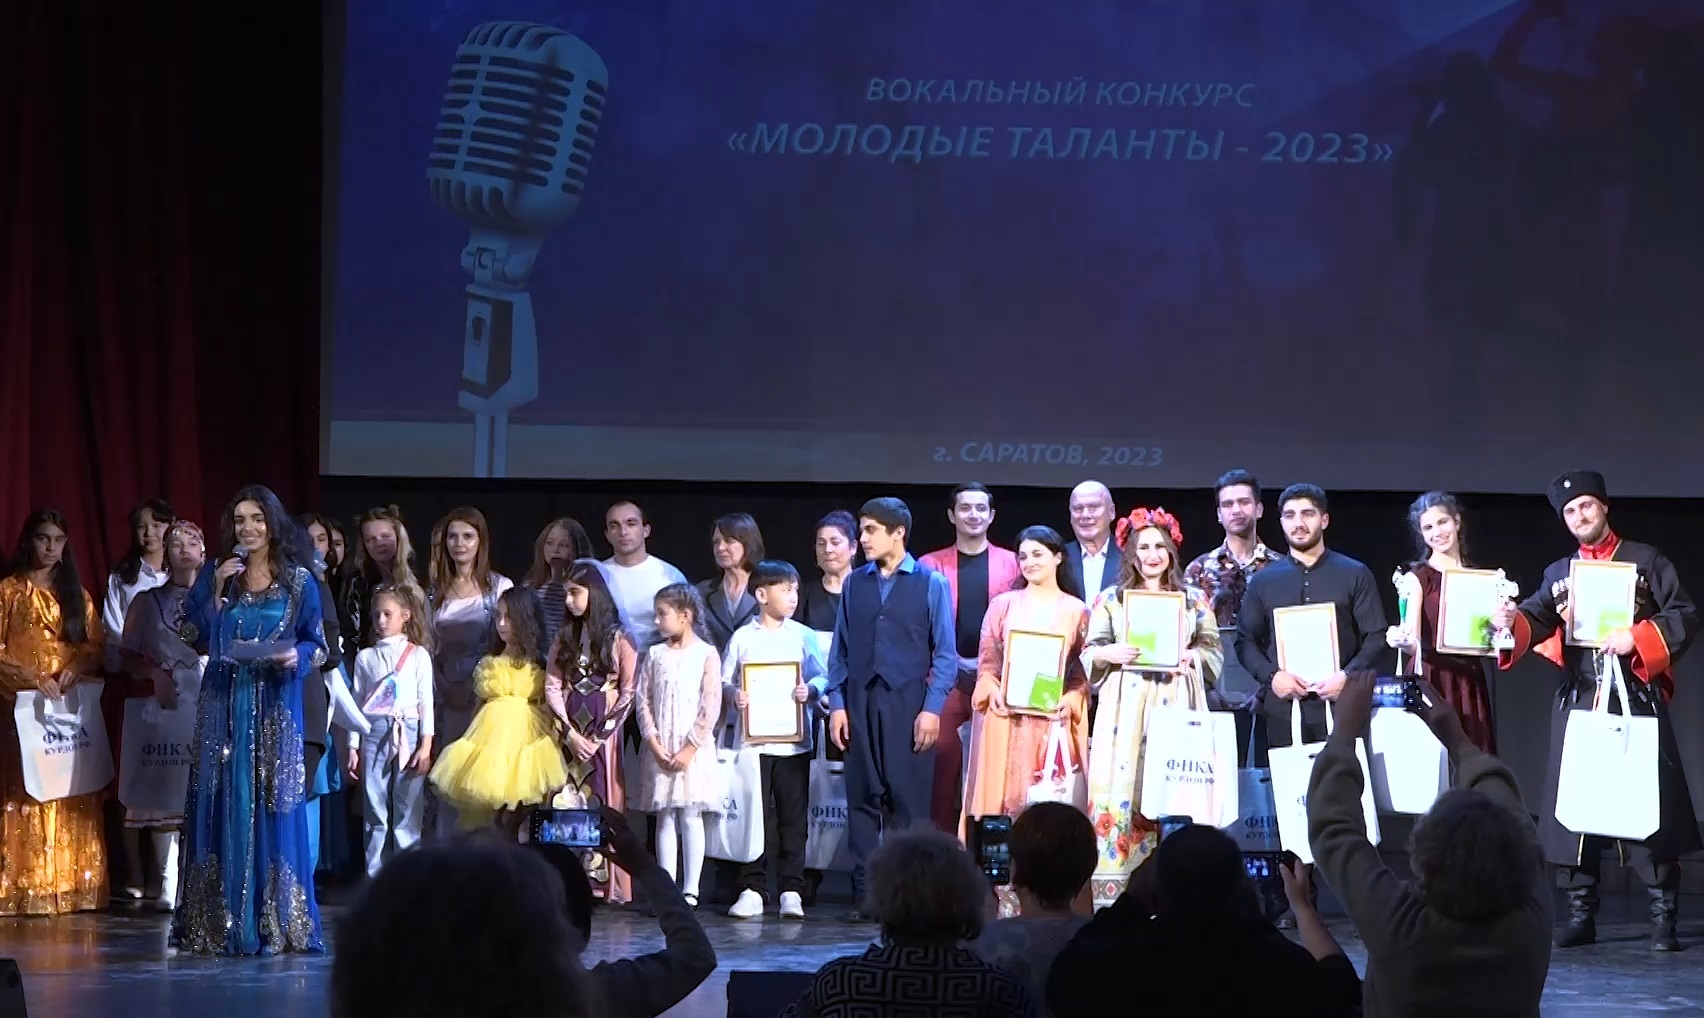 Вокальный конкурс «Молодые таланты - 2023» прошёл в Саратове